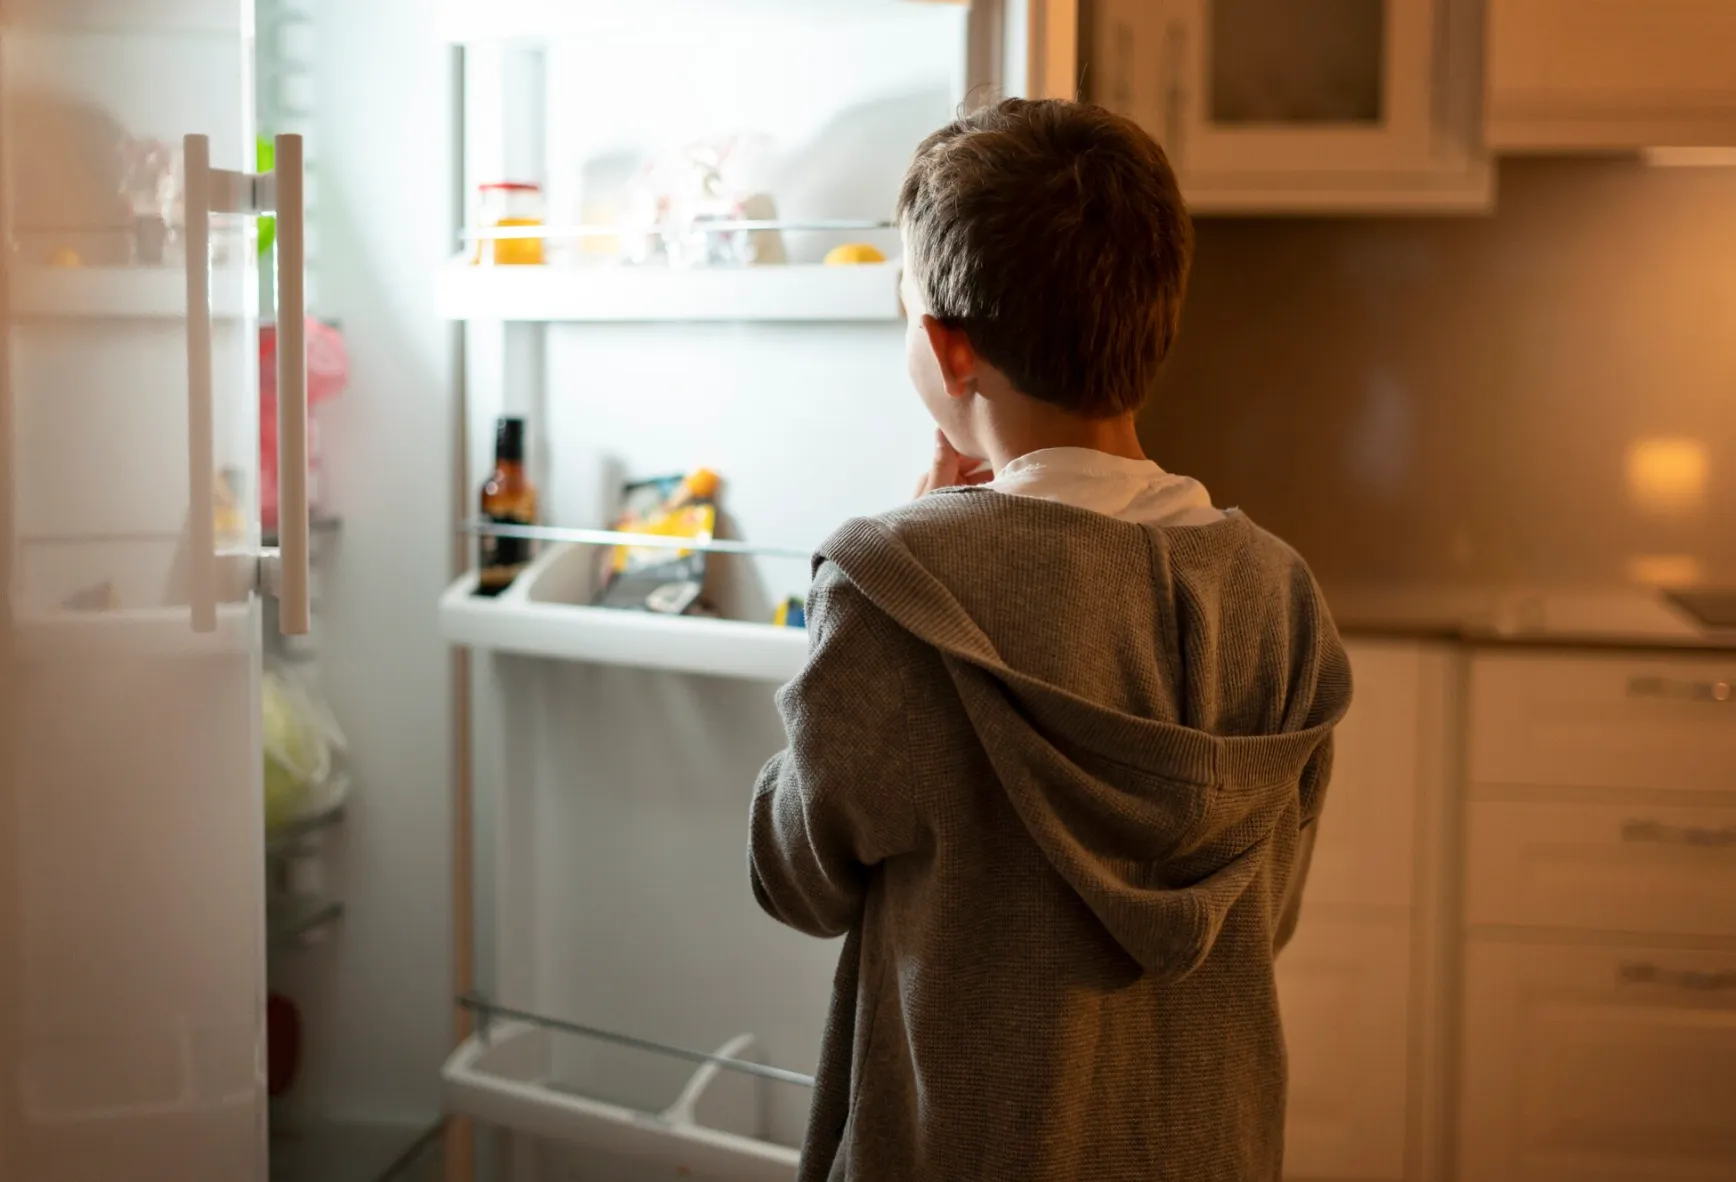 Убрать в тень и не забивать едой: Life.ru узнал, как уберечь холодильник от поломки в жару